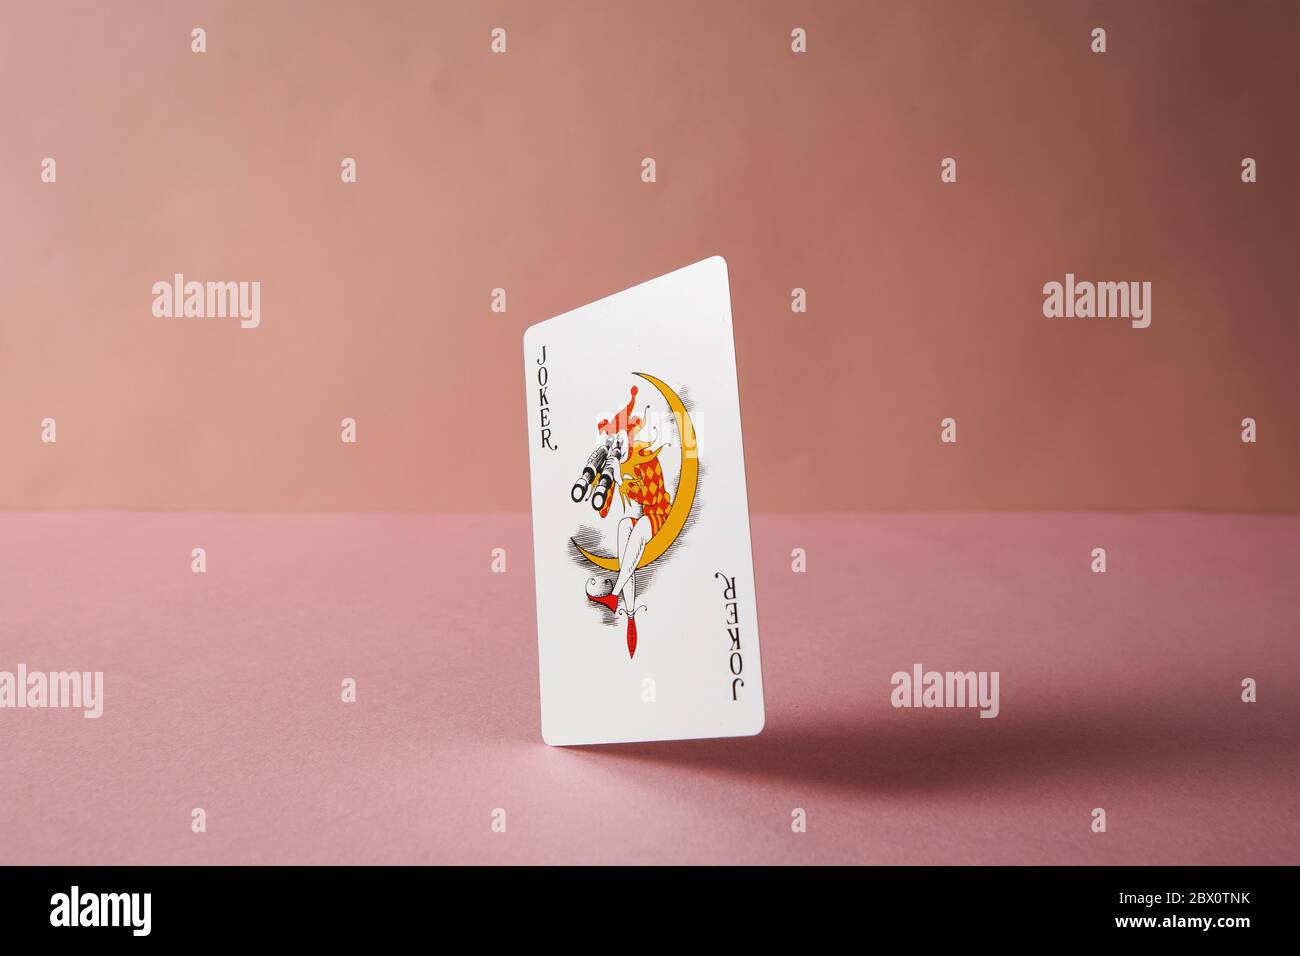 Joker carta da gioco su sfondo rosa. Foto Stock